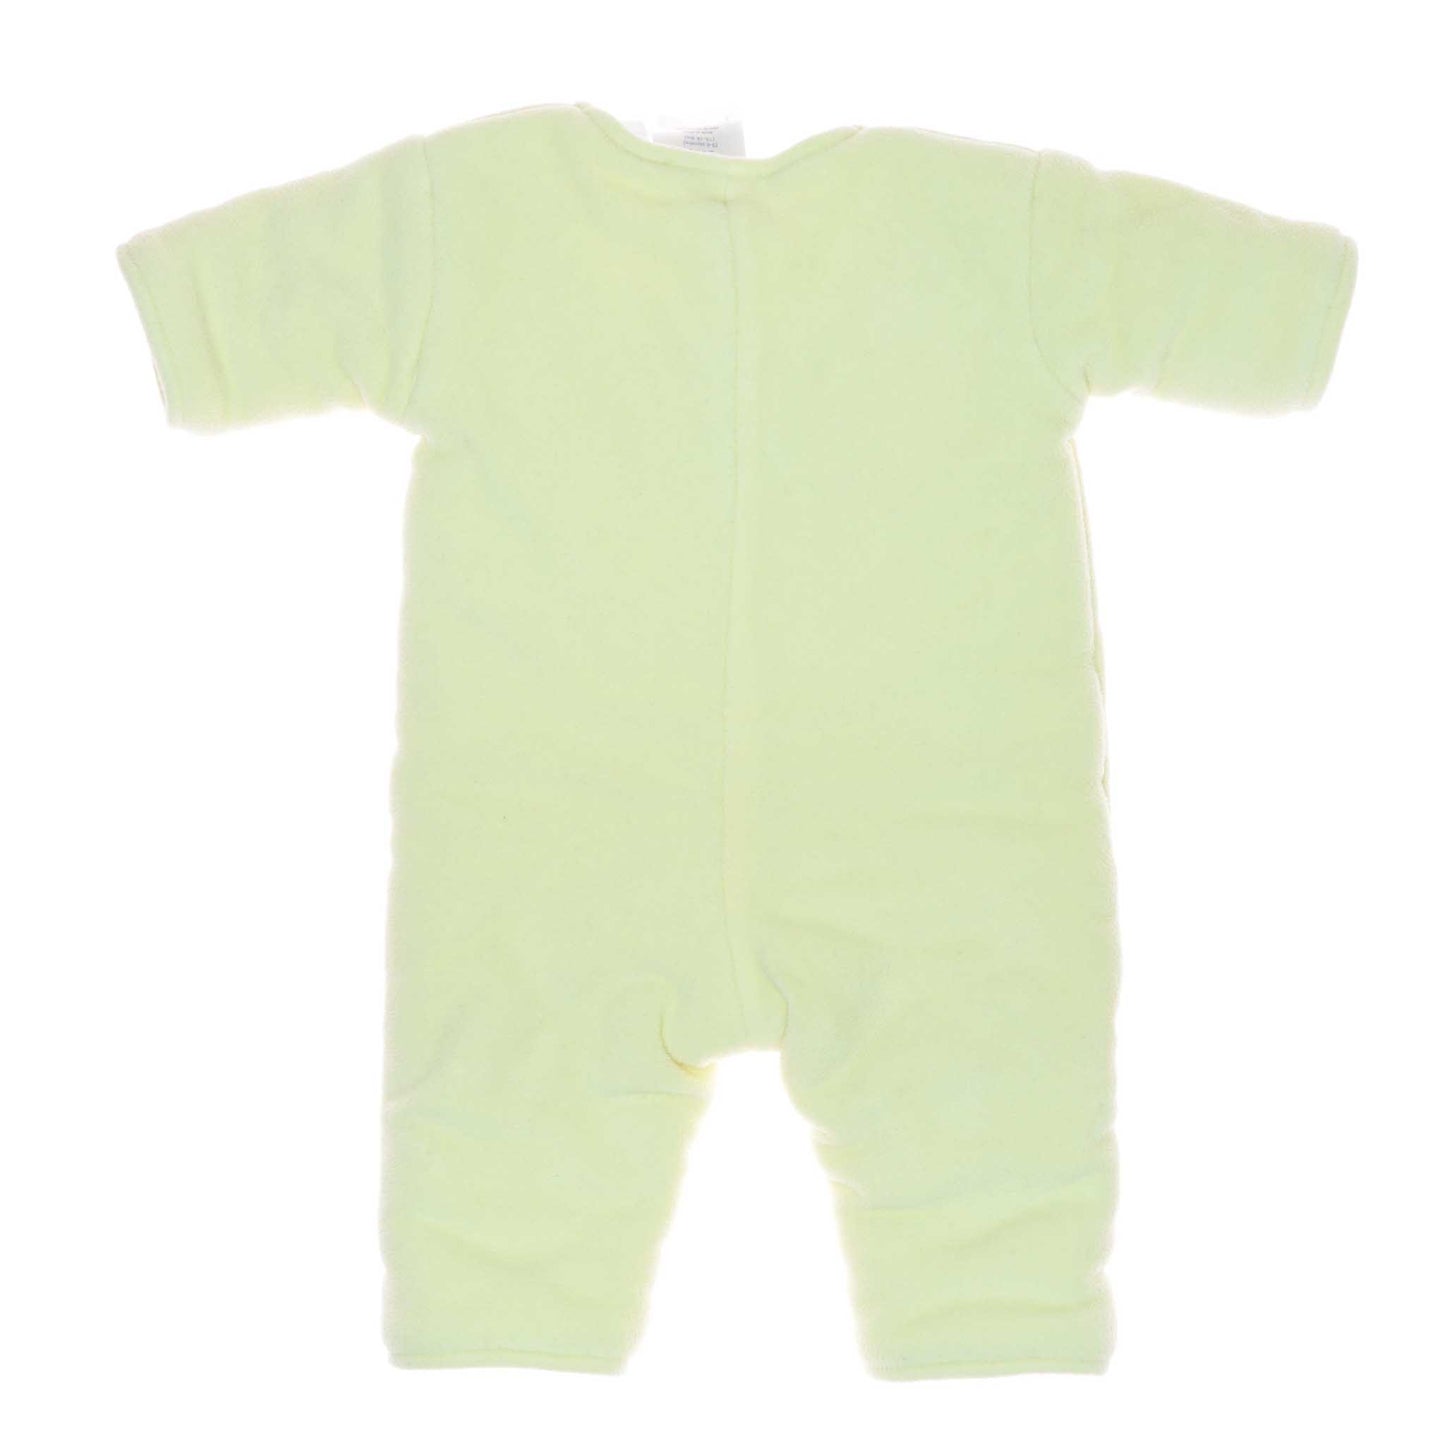 Πυζάμες Magic sleep suit (3 μηνών - 6 μηνών)